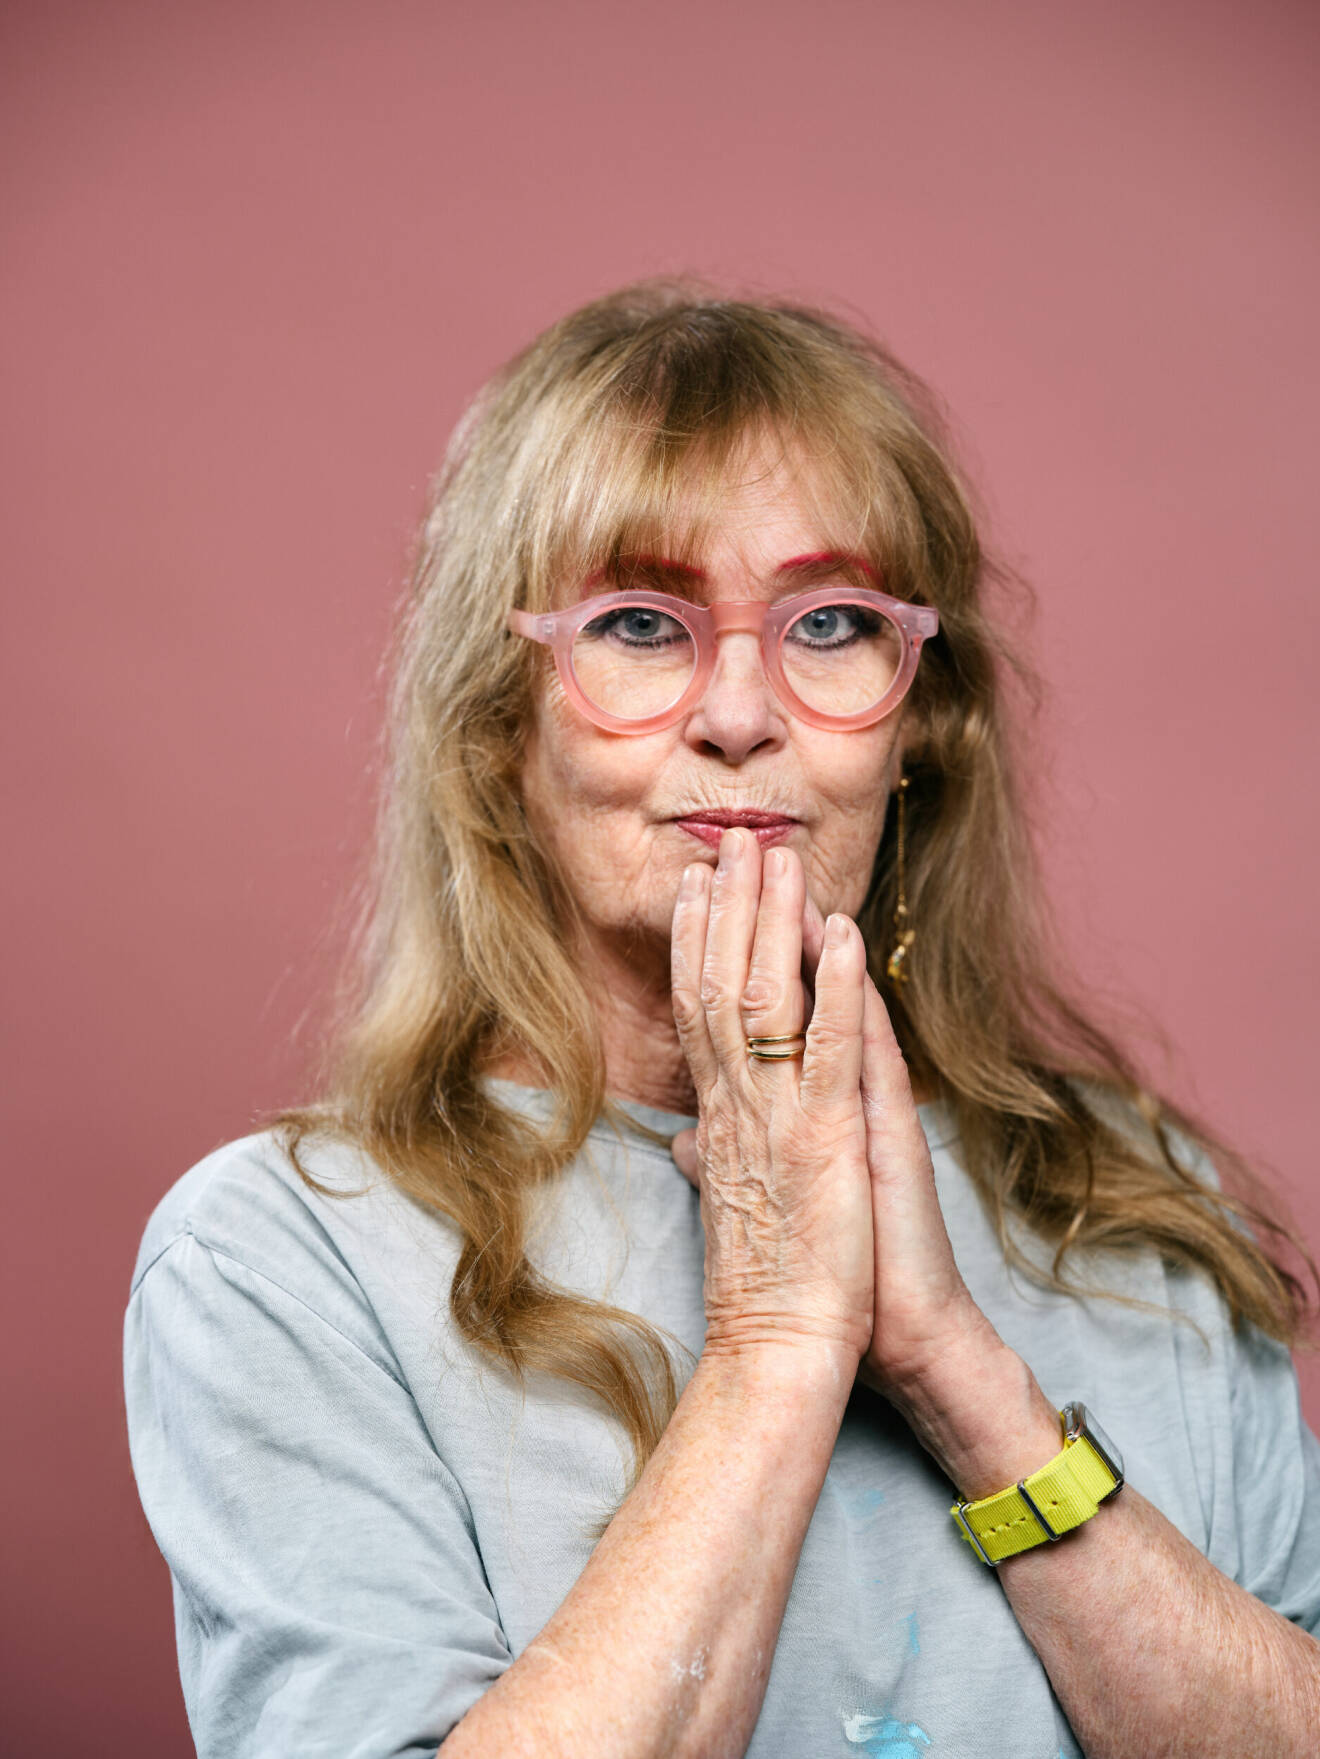 Konstnären Marie-Louise Ekman matchar glasögonen med sina rosa ögonbryn.